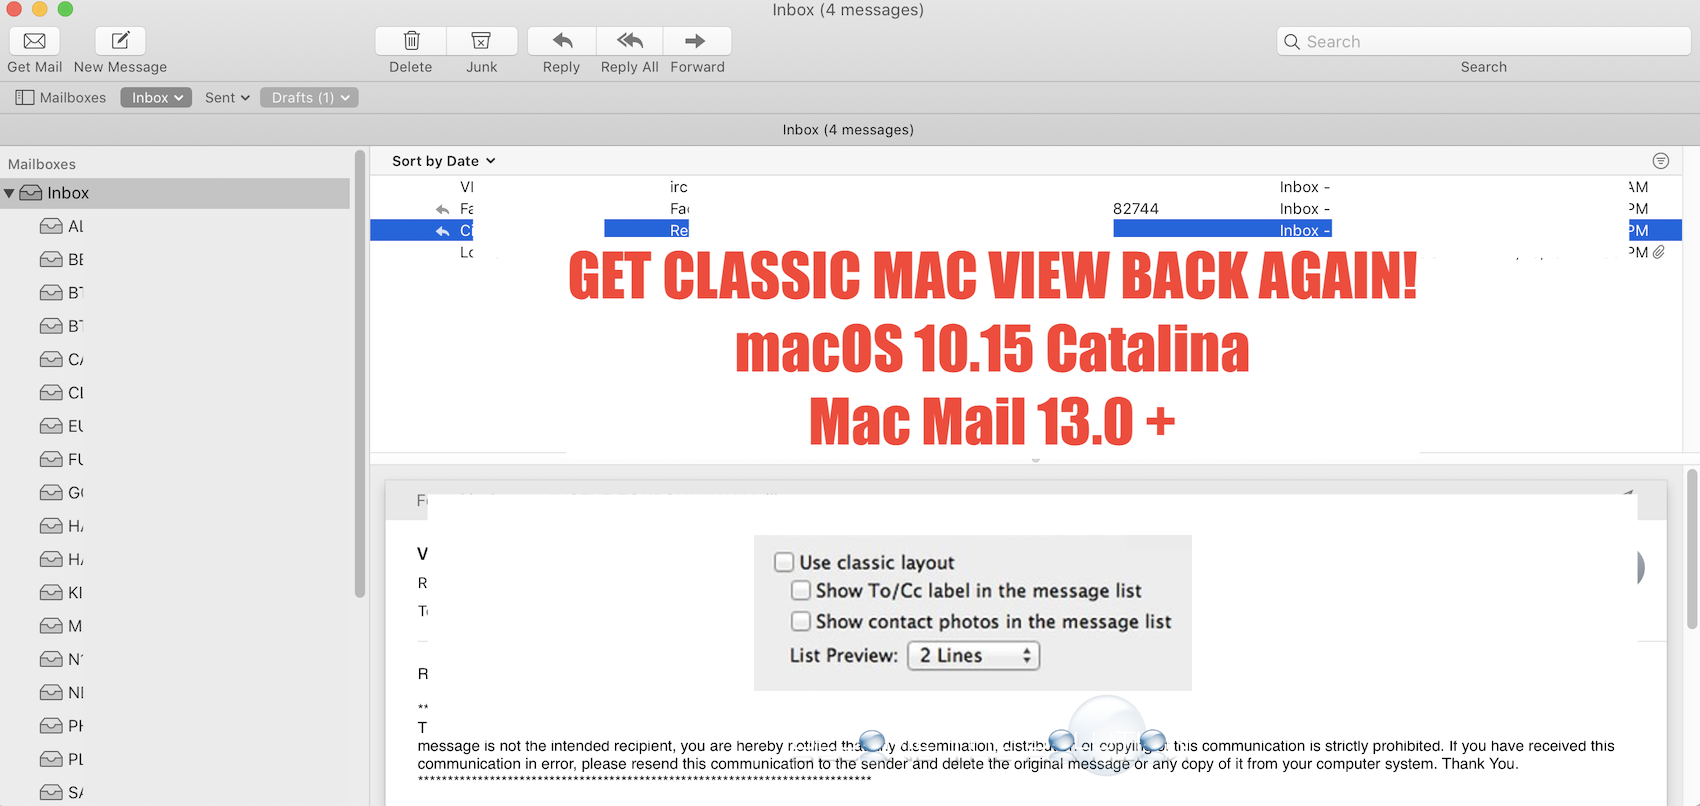 Fix: Restore Classic View in Mac Mail v13.0 + (macOS Catalina 10.15)